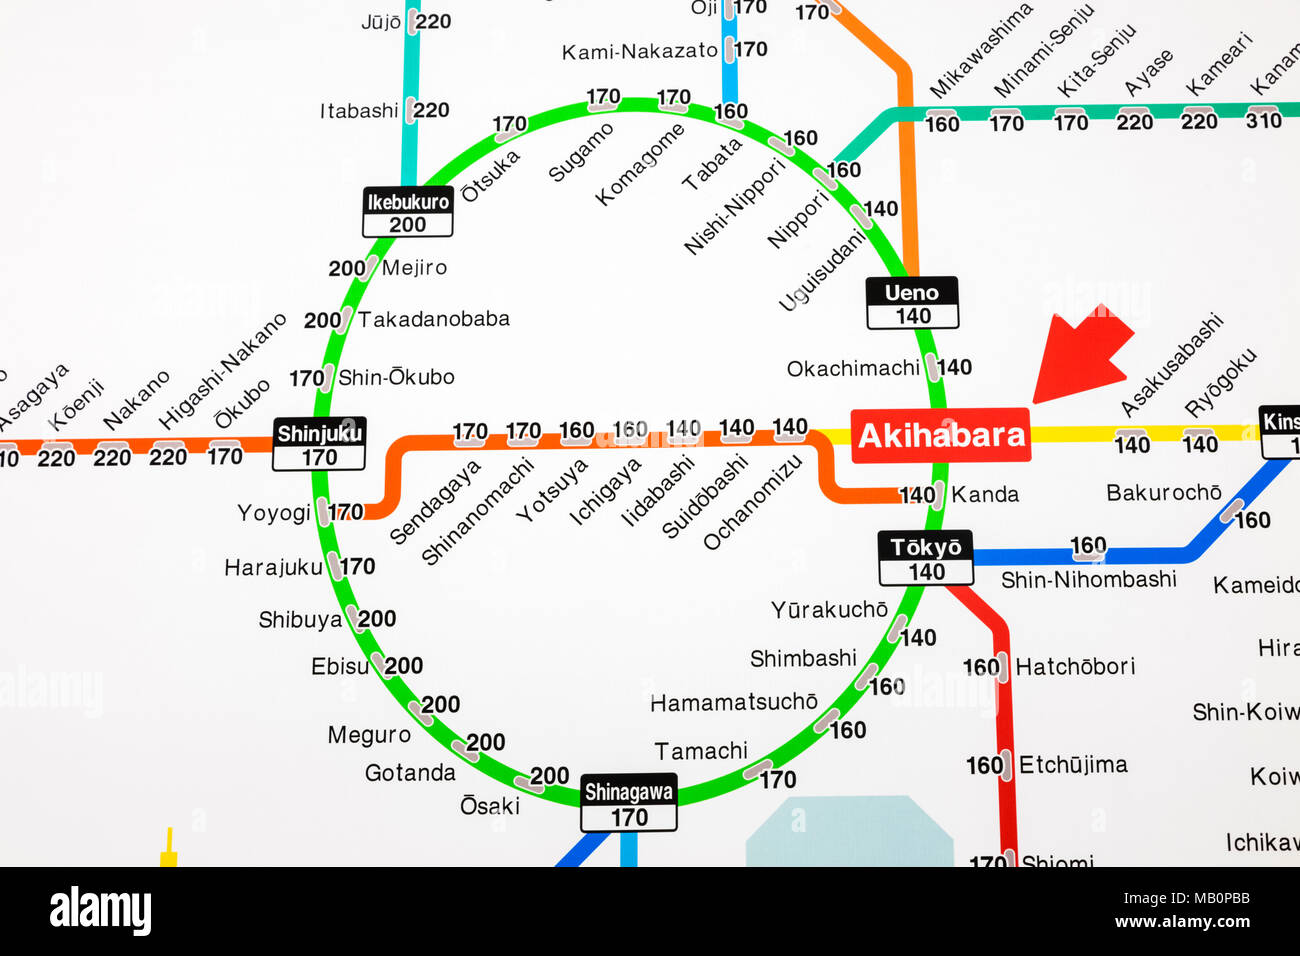 Giappone, Honshu, Tokyo, Akihabara Station, Stazione ferroviaria la mappa di rete mostra i prezzi dei biglietti per varie destinazioni in inglese Foto Stock